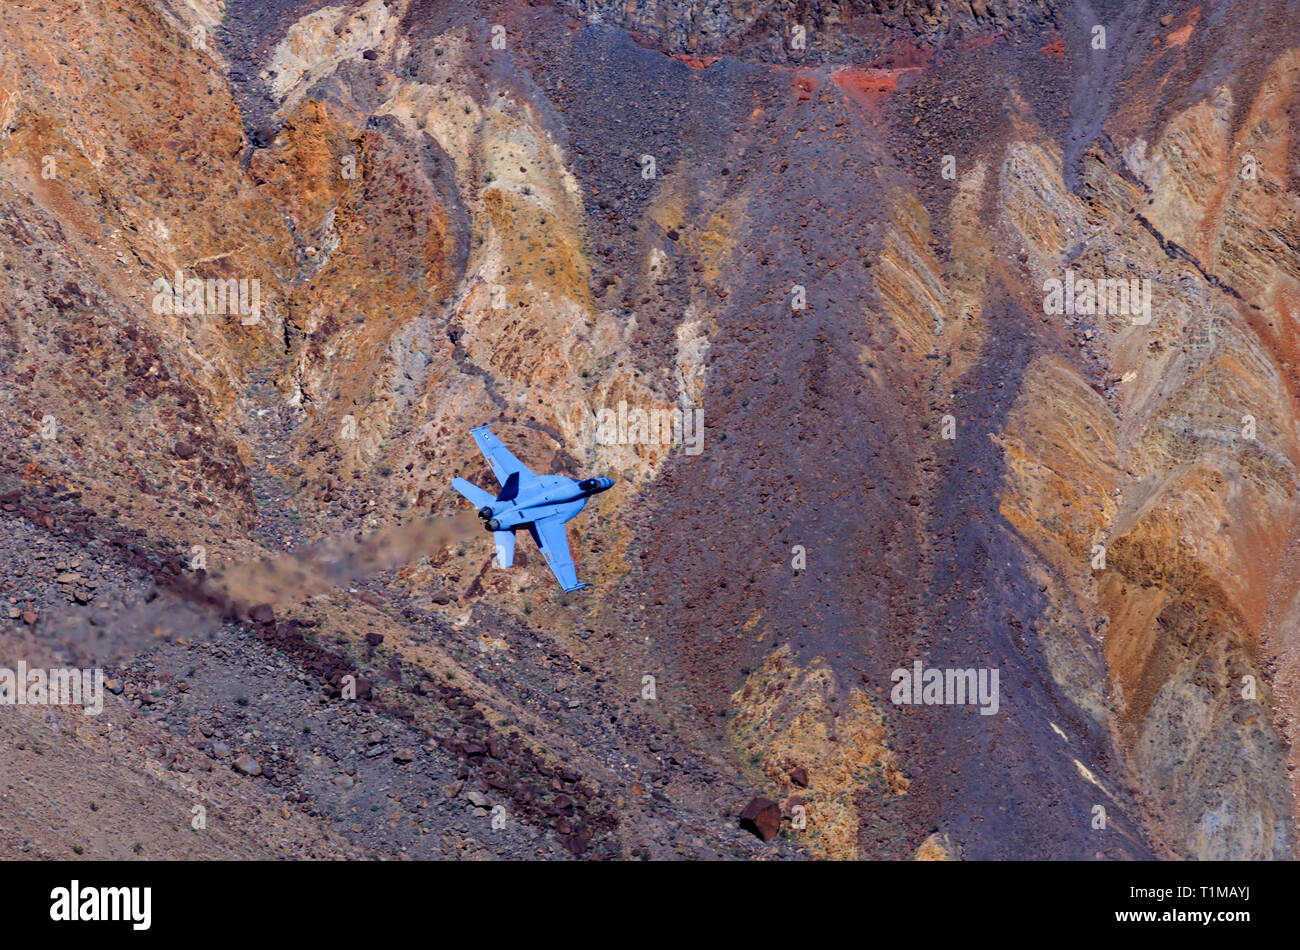 Dans ce shot un Boeing F/A-18E Super Hornet fait une course vers le bas/Rainbow Canyon Star Wars dans Death Valley National Park, California, USA. Banque D'Images